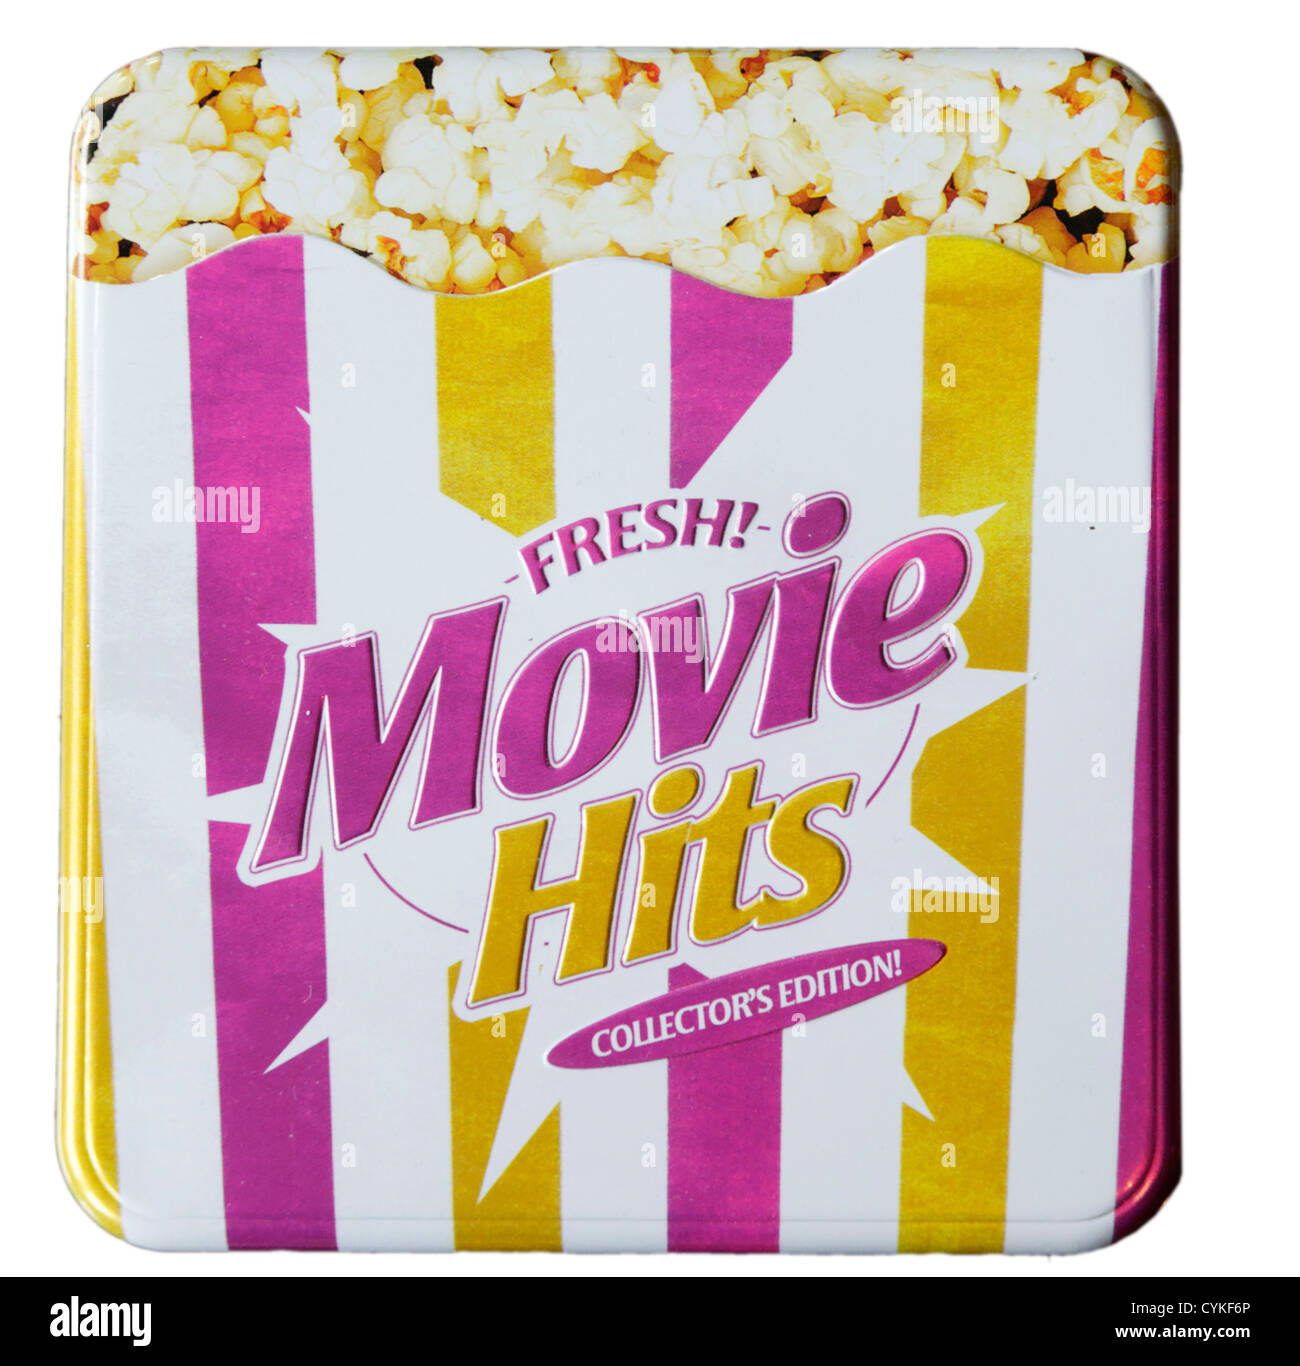 Un CD compilation di musica di film conformata come un sacchetto di popcorn Foto Stock